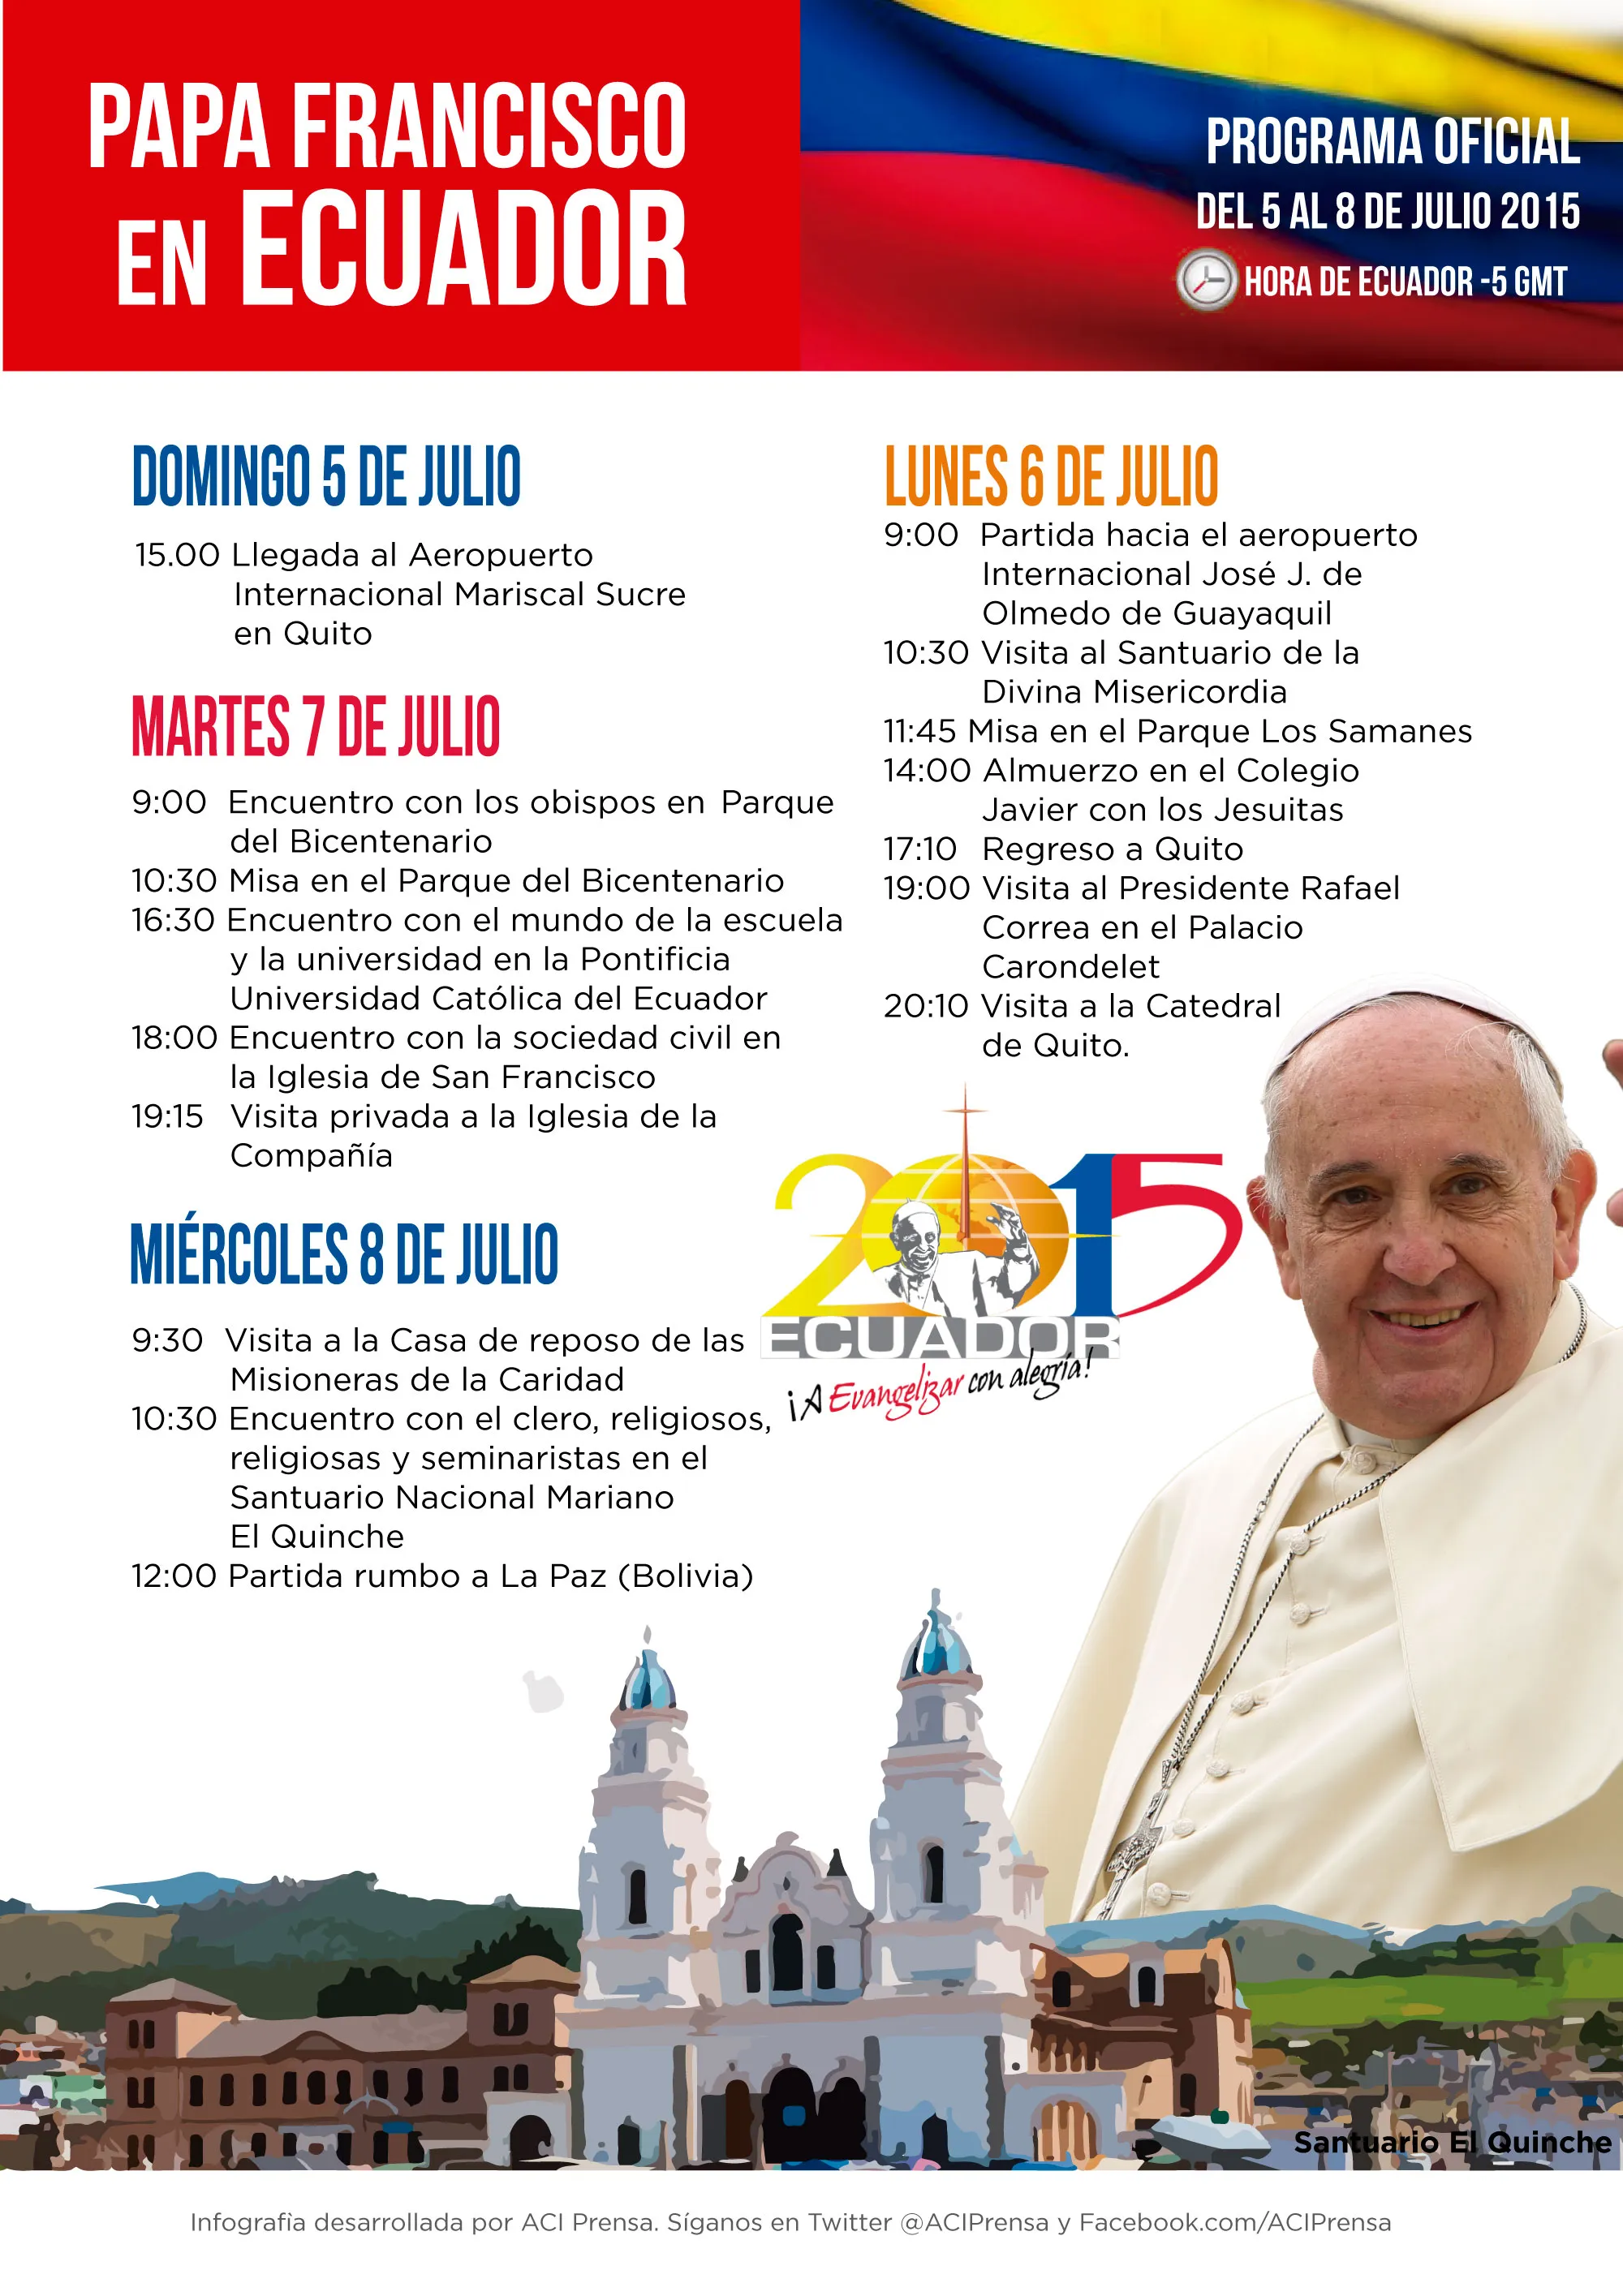 [INFOGRAFÍA] Programa oficial de la visita del Papa Francisco a Ecuador